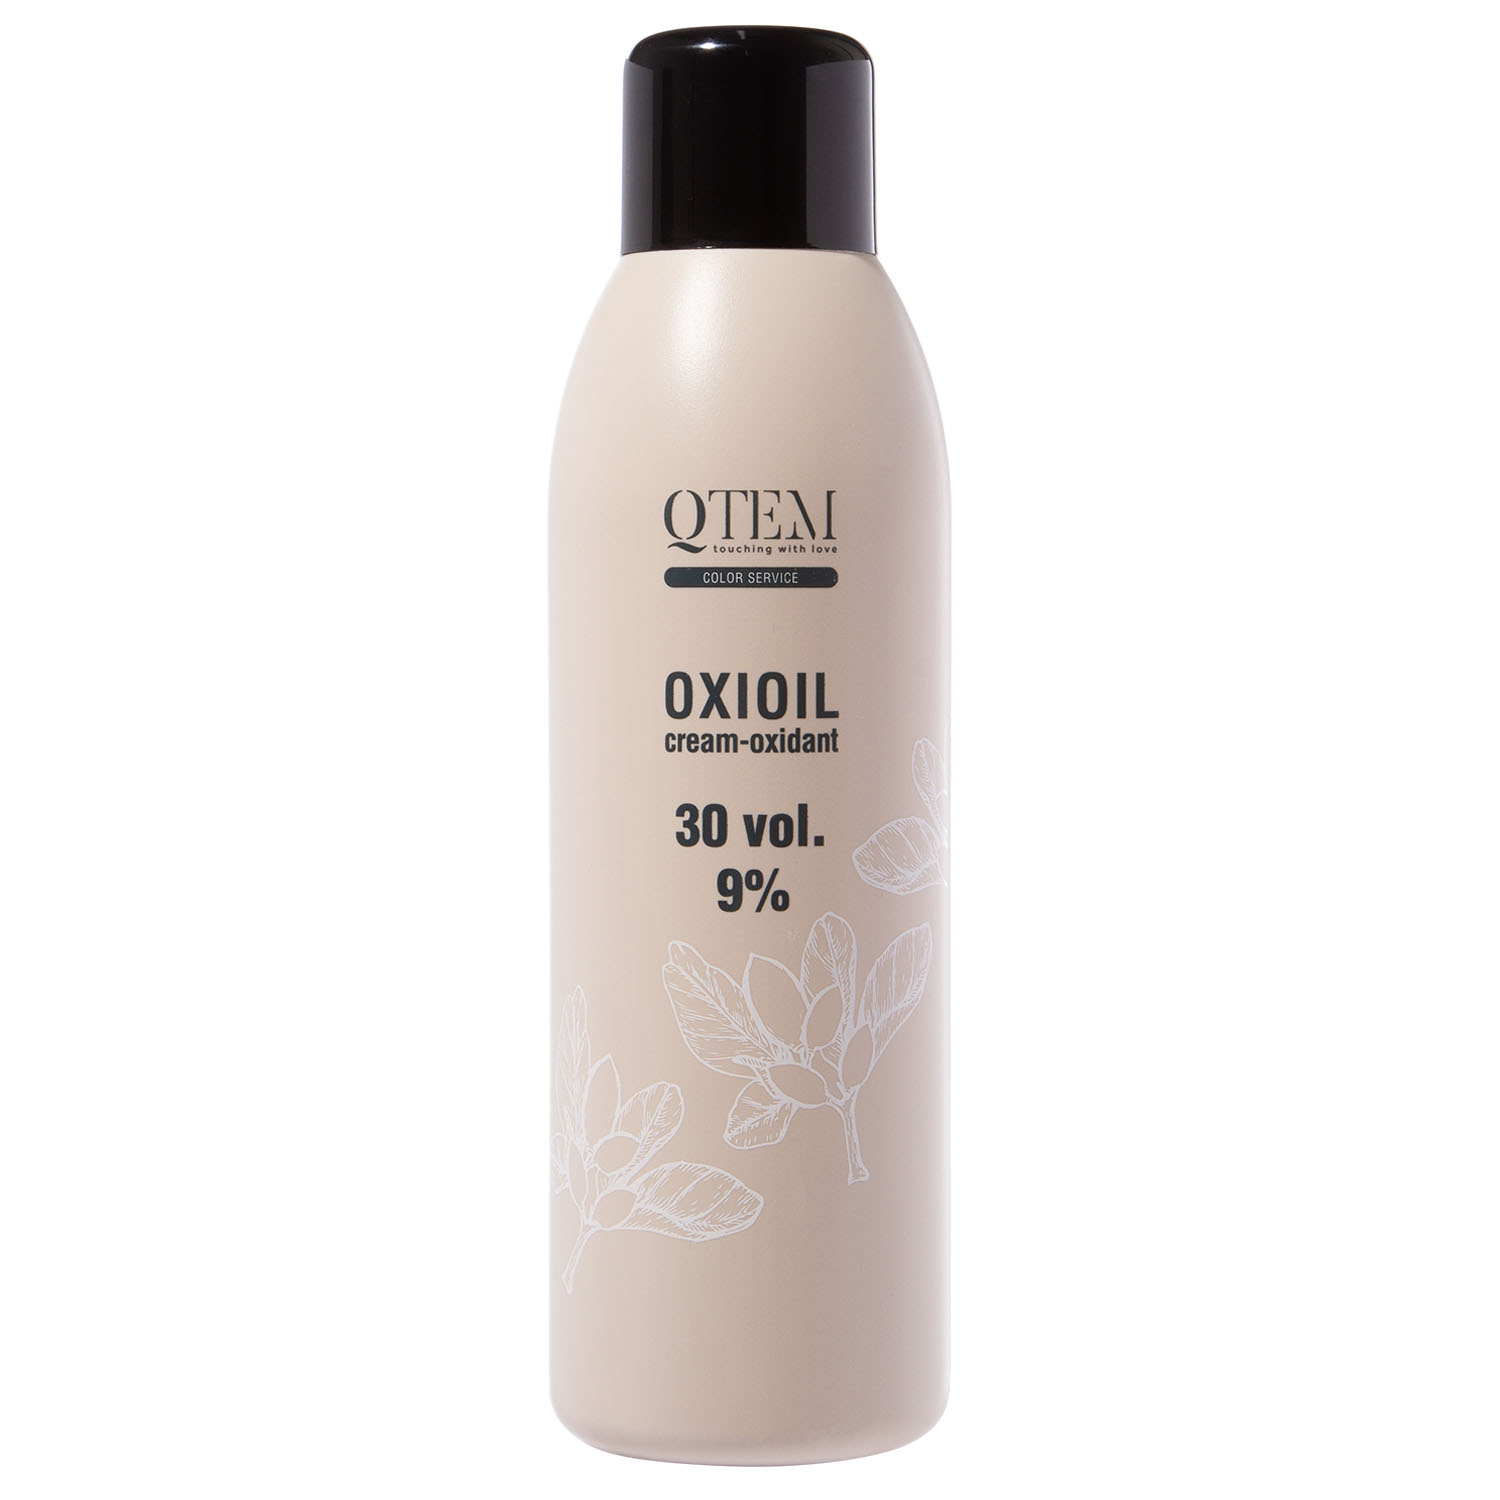 Qtem Универсальный крем-оксидант Oxioil 9% (30 Vol.), 1000 мл (Qtem, Color Service)